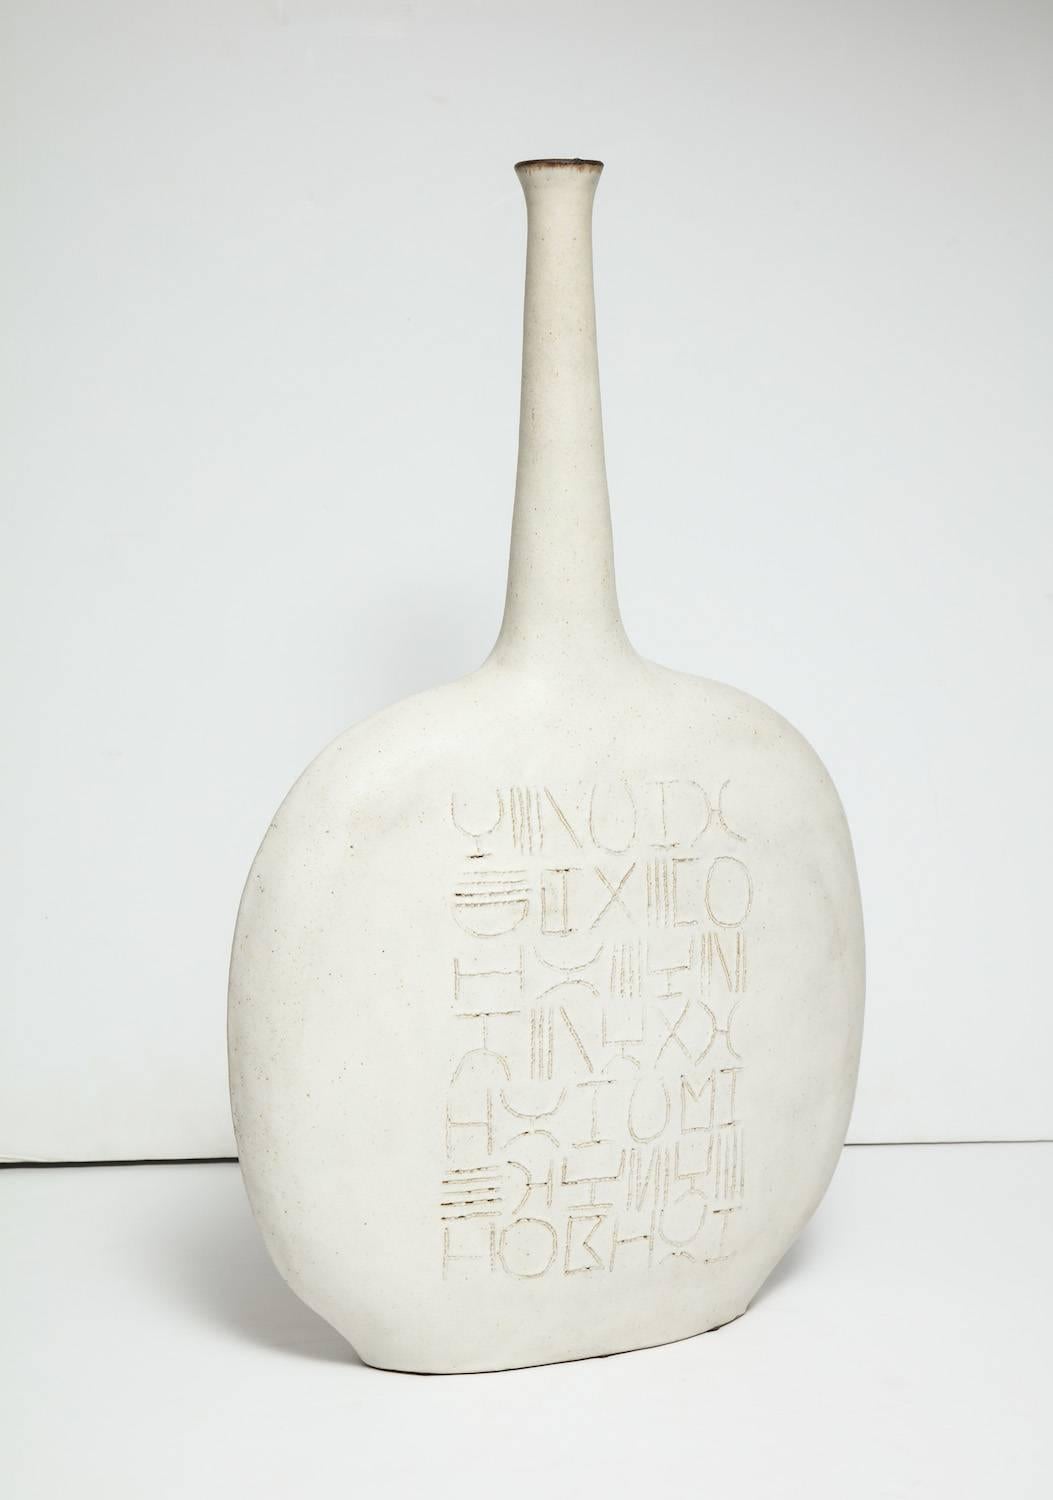 Einzigartiges Gehäuse in Flaschenform von Bruno Gambone.
Großformatige Skulptur/Vase aus Steinzeug in Flaschenform mit eingeschnittenem Liniendekor auf Vorder- und Rückseite. Matt-weiße Glasur mit braunem Rand. Am Sockel vom Künstler signiert.